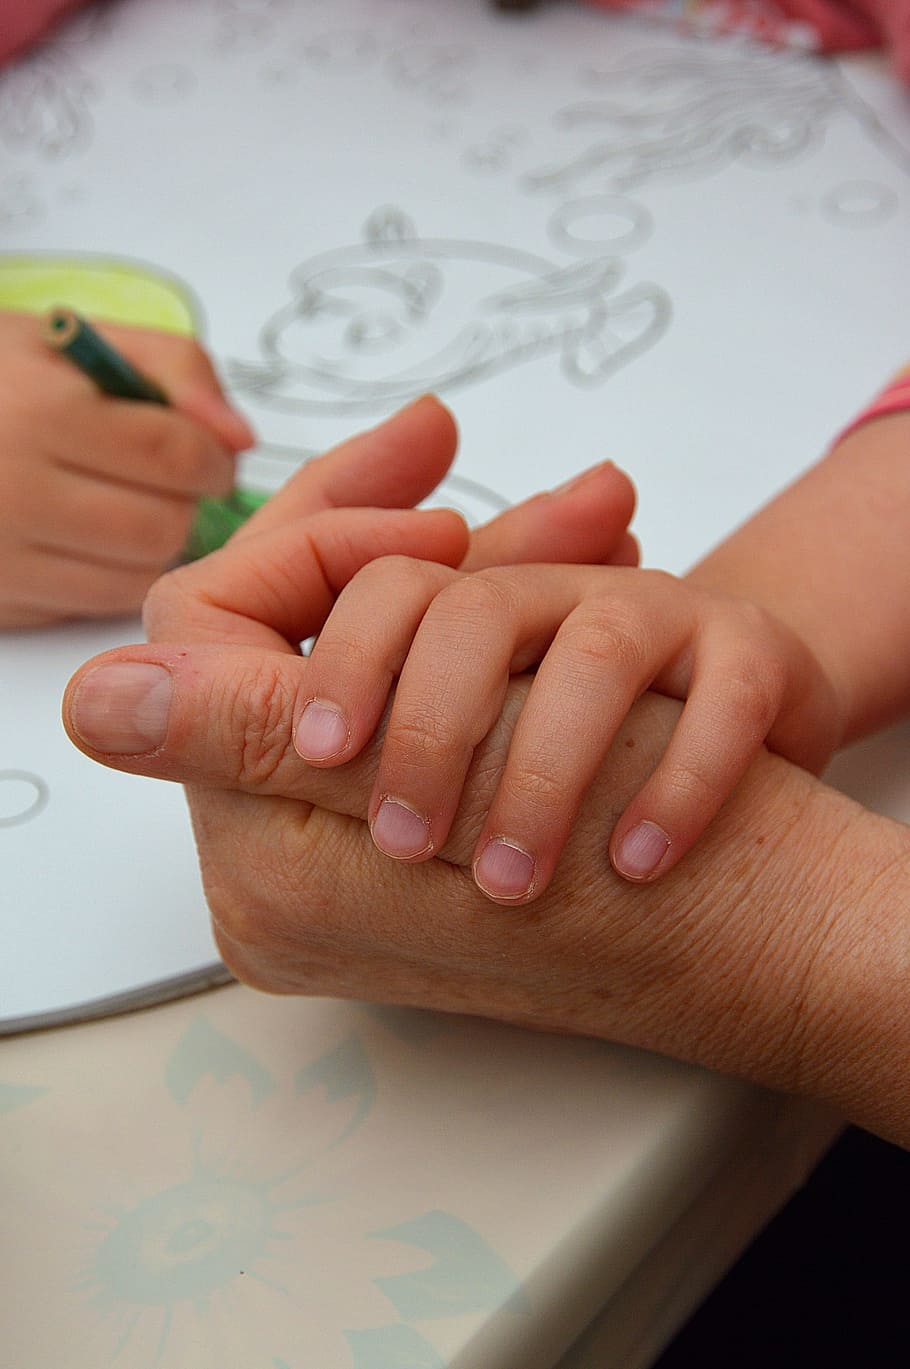 Mano, manos, niño, inicio, inicio de, dibujo infantil, niña, parte del cuerpo humano, mano humana, dedo humano